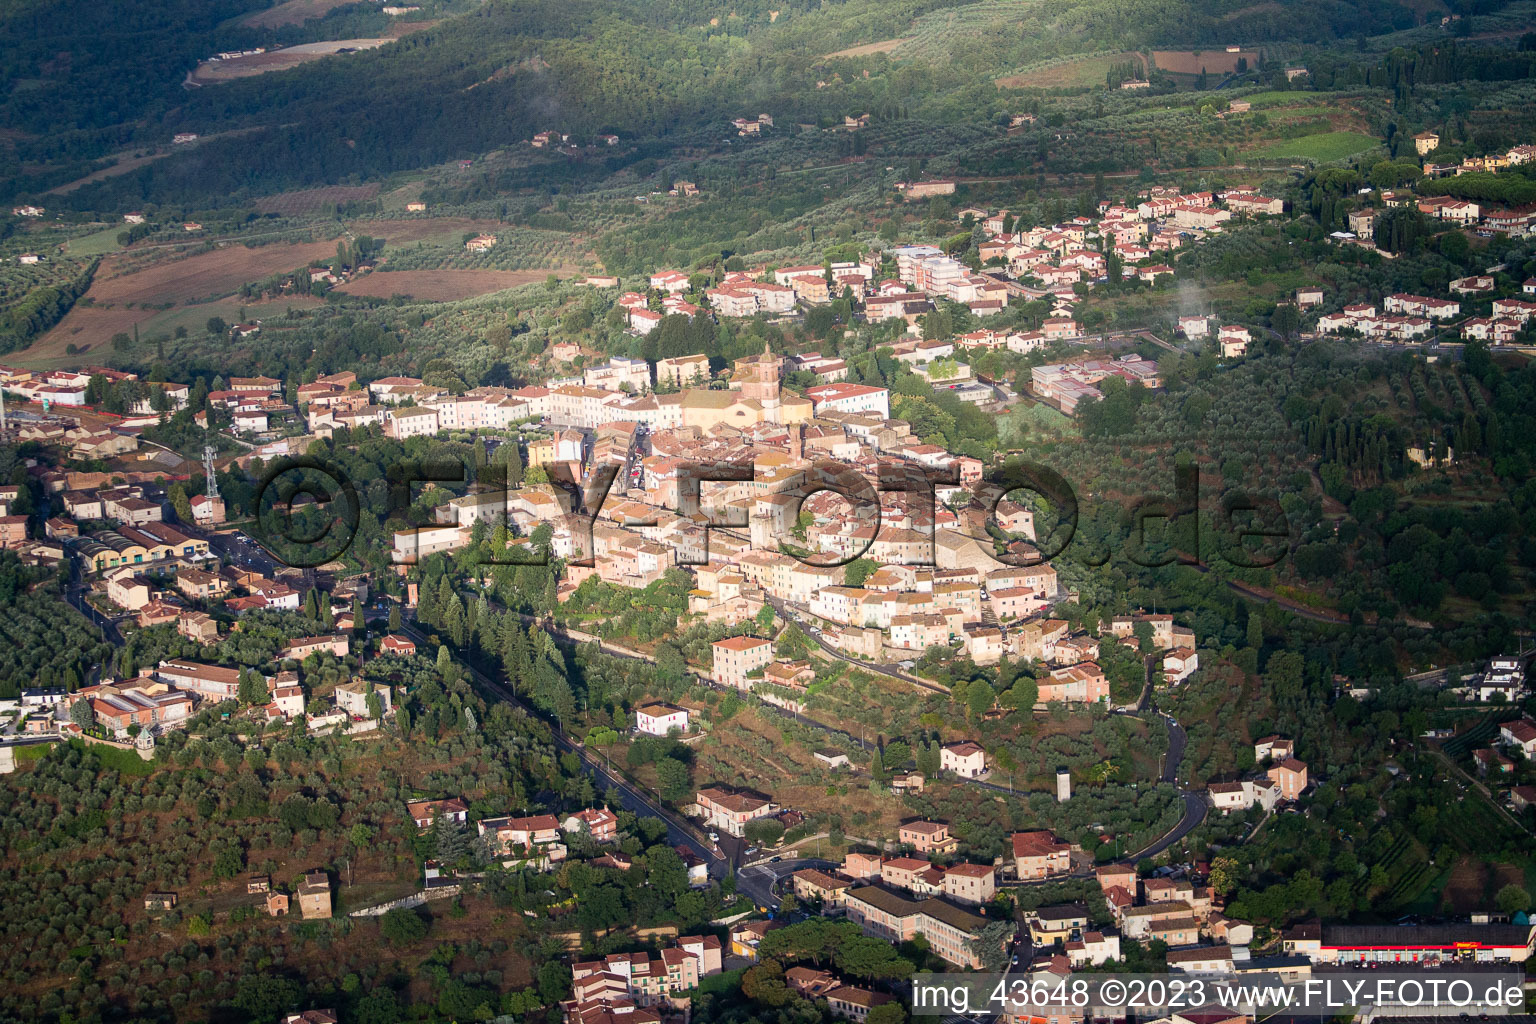 Luftbild von Sinalunga im Bundesland Toscana, Italien